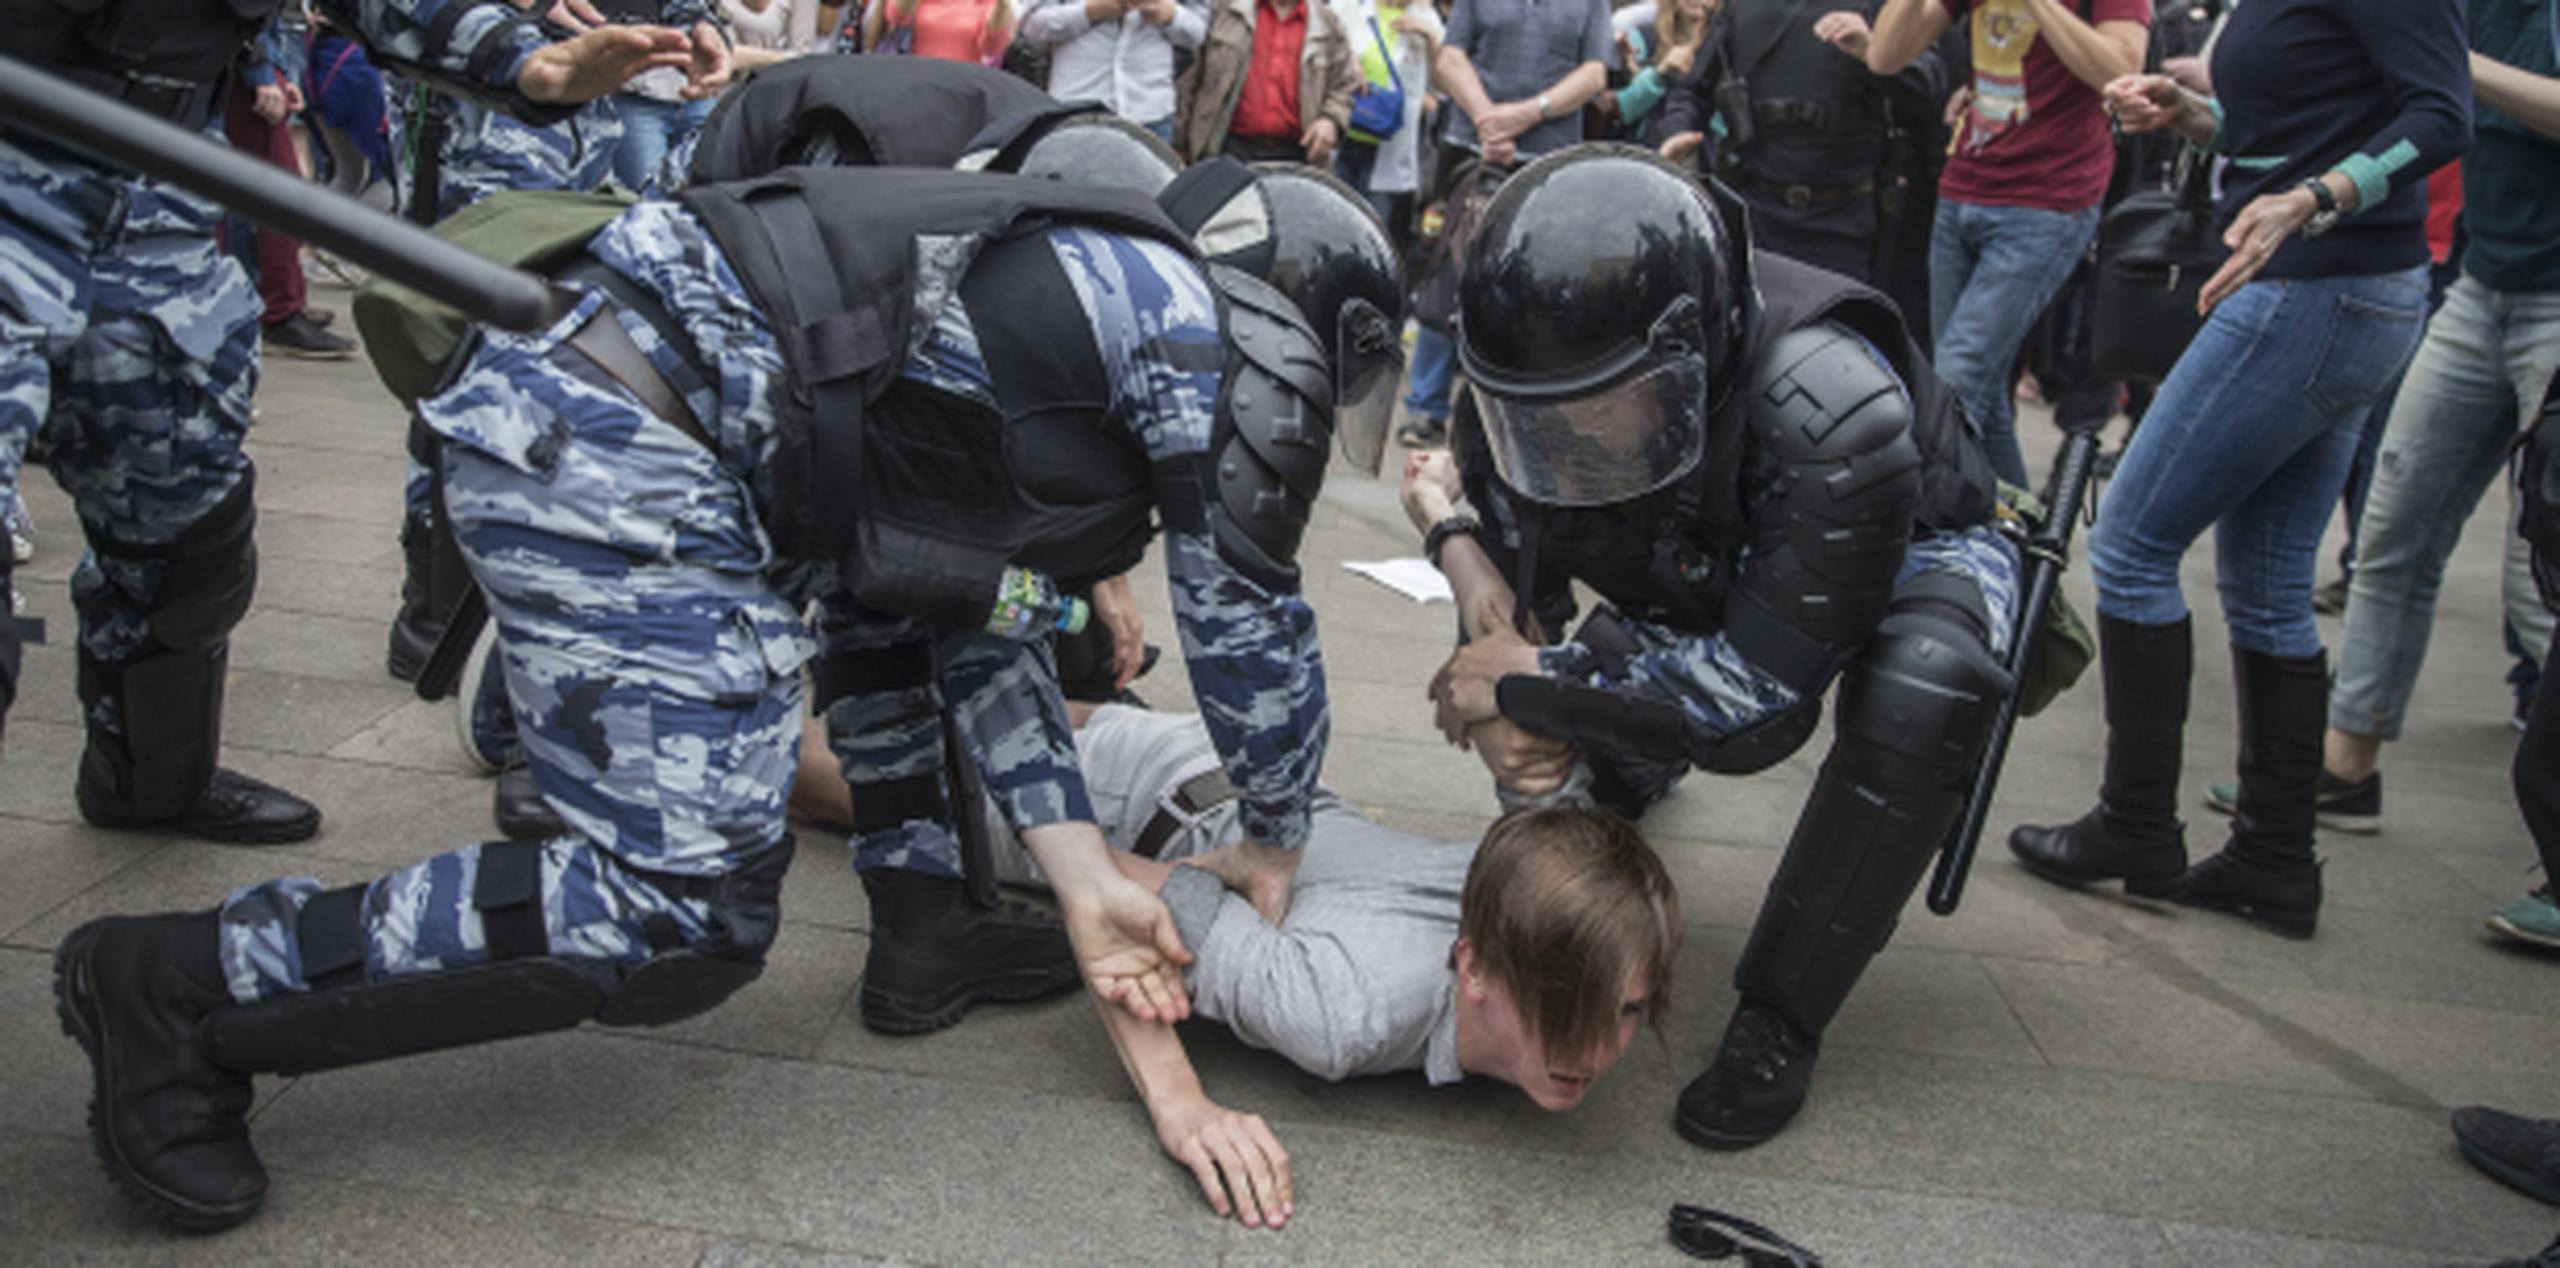 La policía en Moscú advirtió que “cualquier acto de provocación de parte de los manifestantes será considerado una amenaza al orden público y será suprimido de inmediato”. (AP)